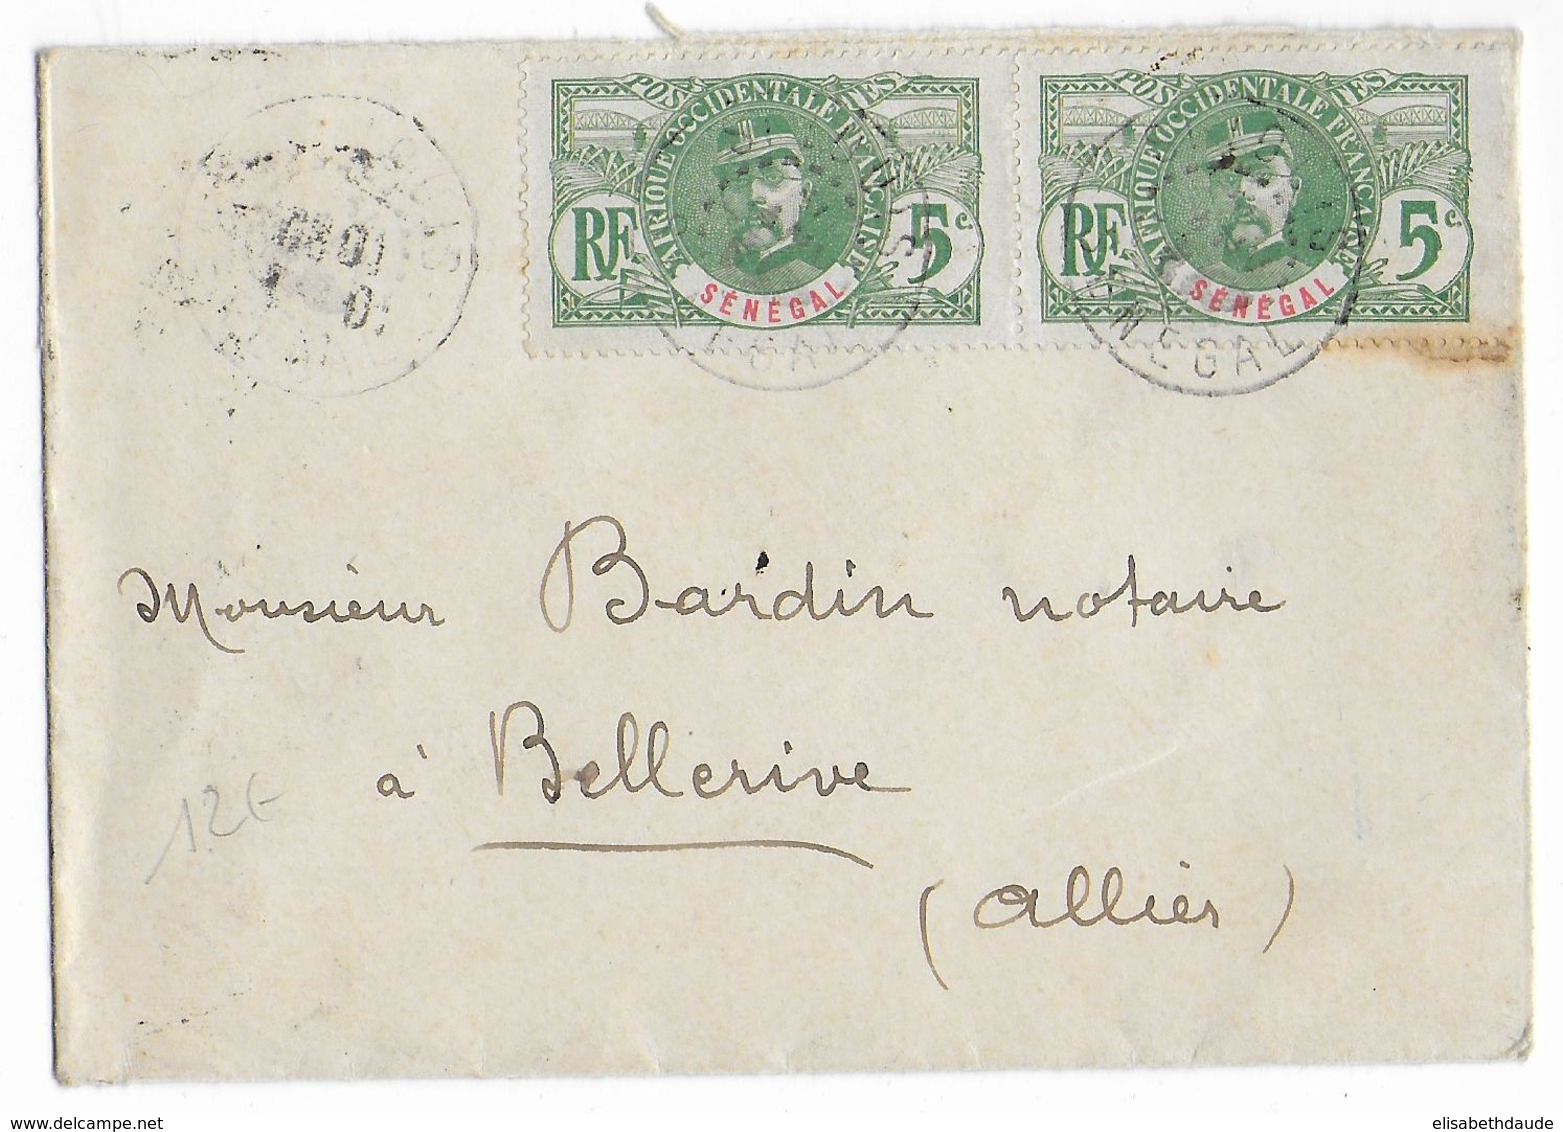 SENEGAL - 1914 - FAIDHERBE Sur ENVELOPPE De SAINT LOUIS => BELLERIVE (ALLIER) - Covers & Documents